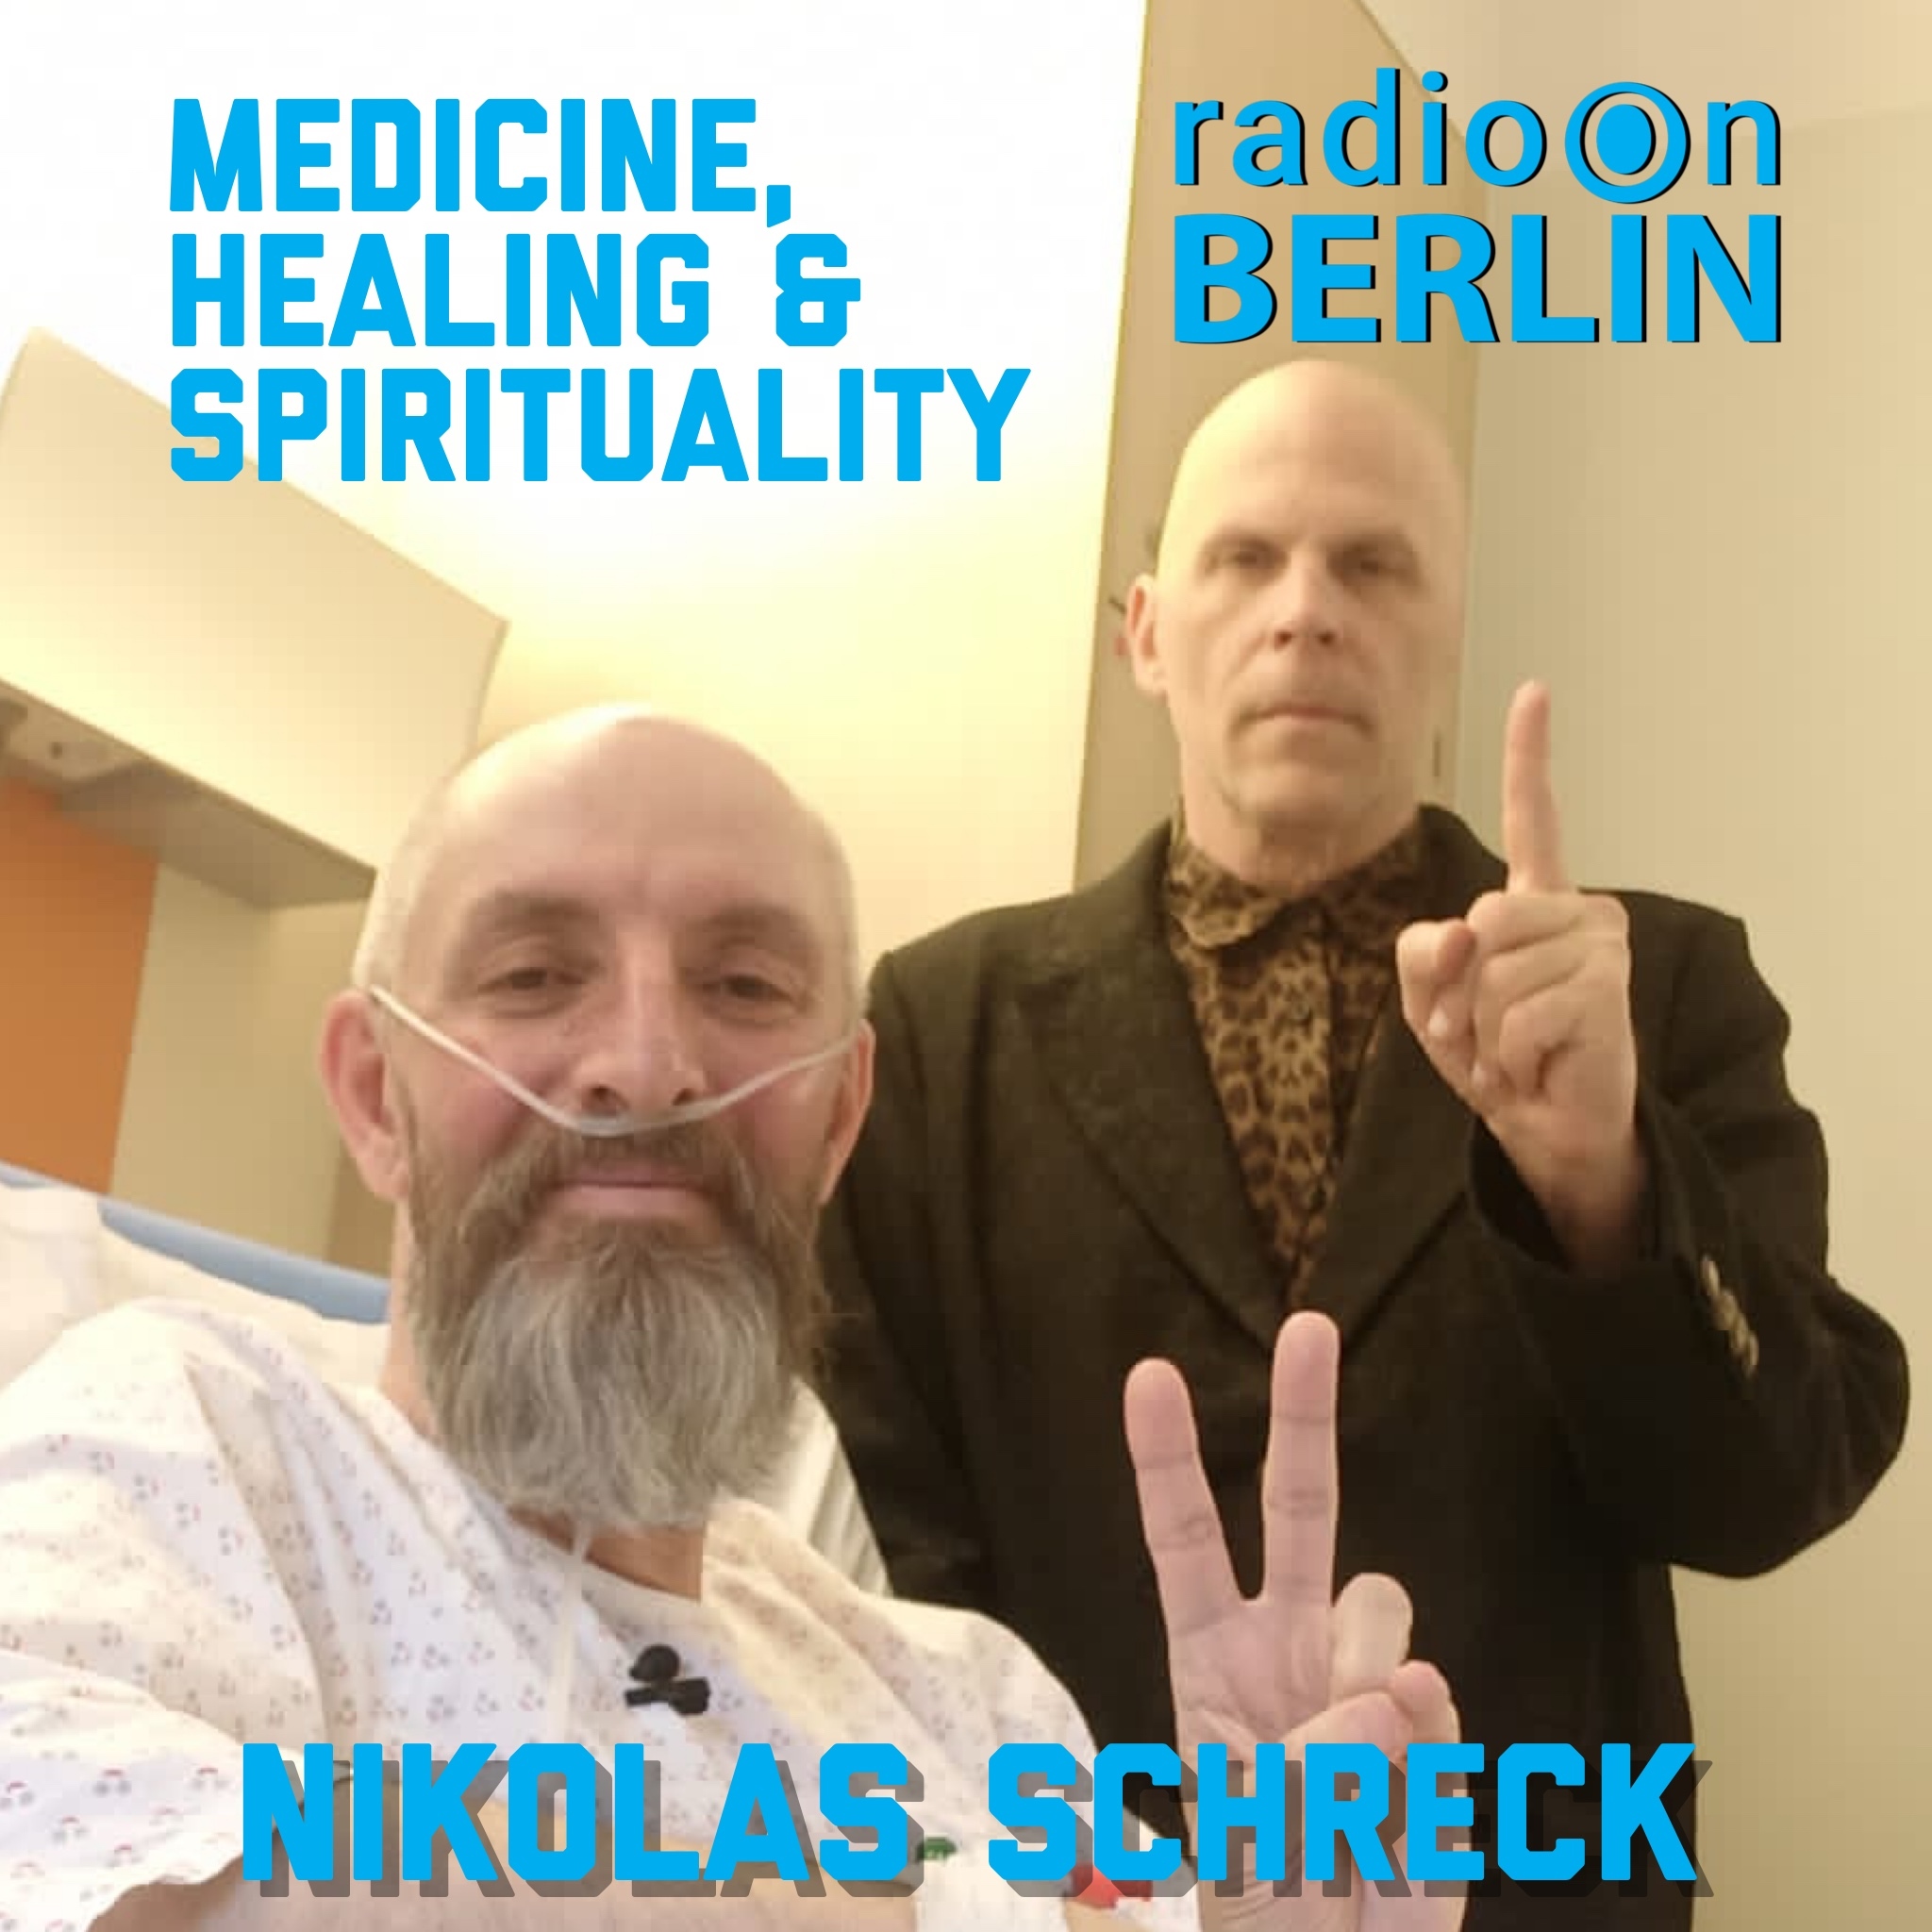 Nikolas_Medicine_Spirituality7nuww.jpg